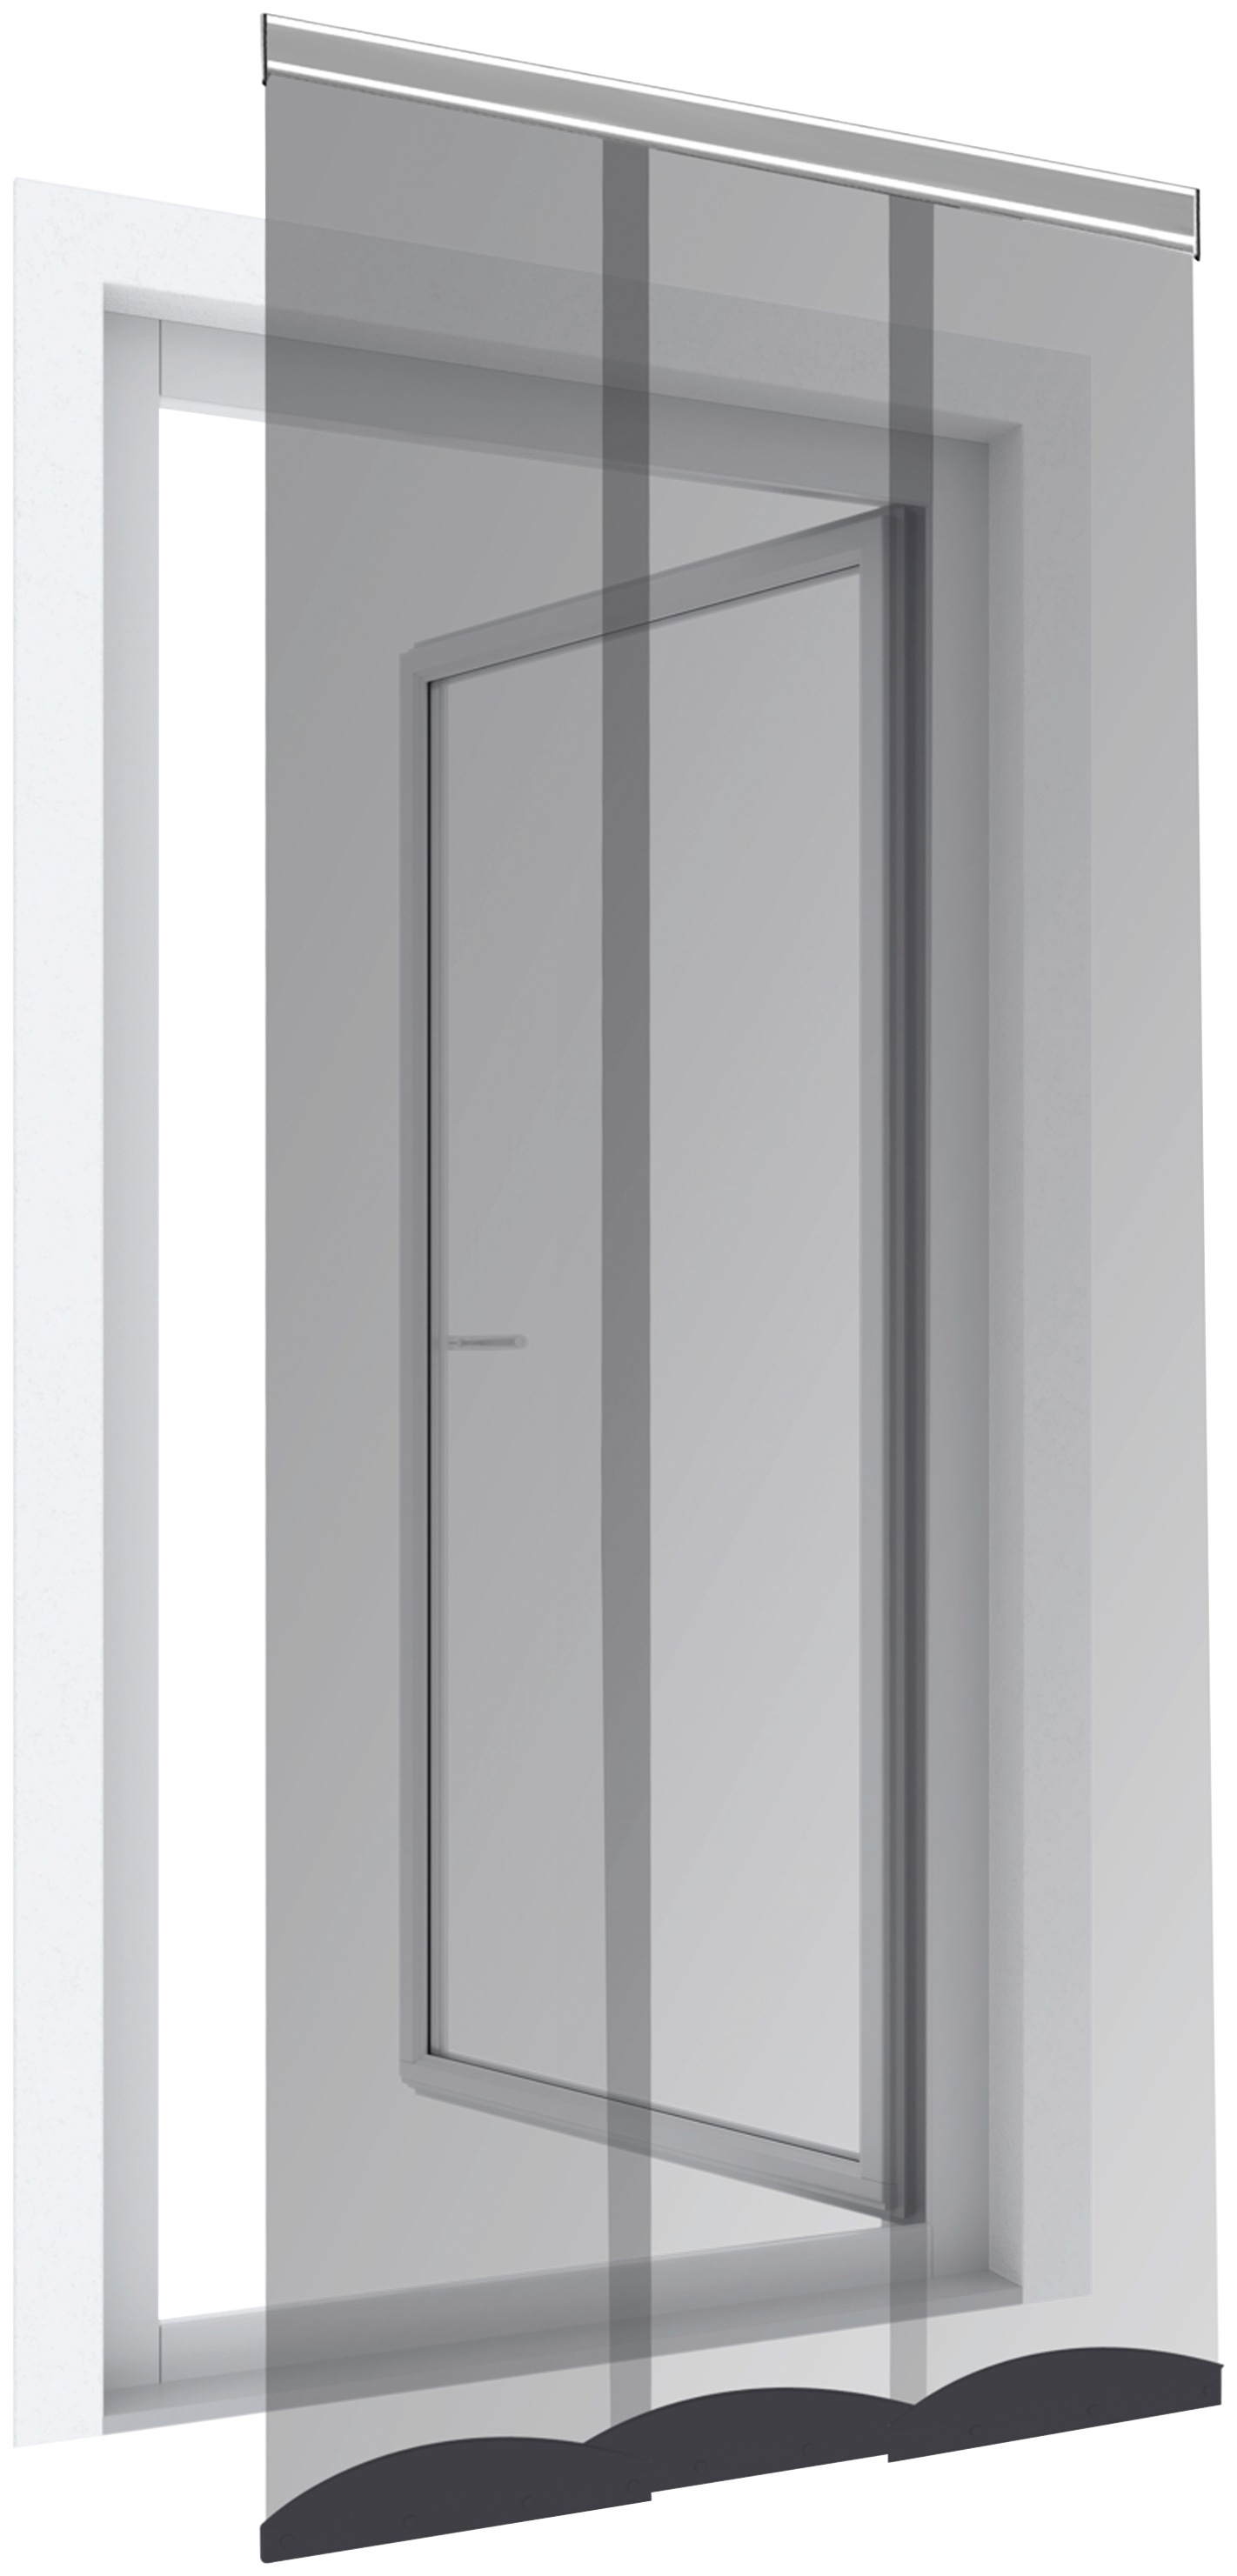 Windhager Insektenschutz-Vorhang »Comfort«, für Türen bis zu einer Größe von 95x220 cm